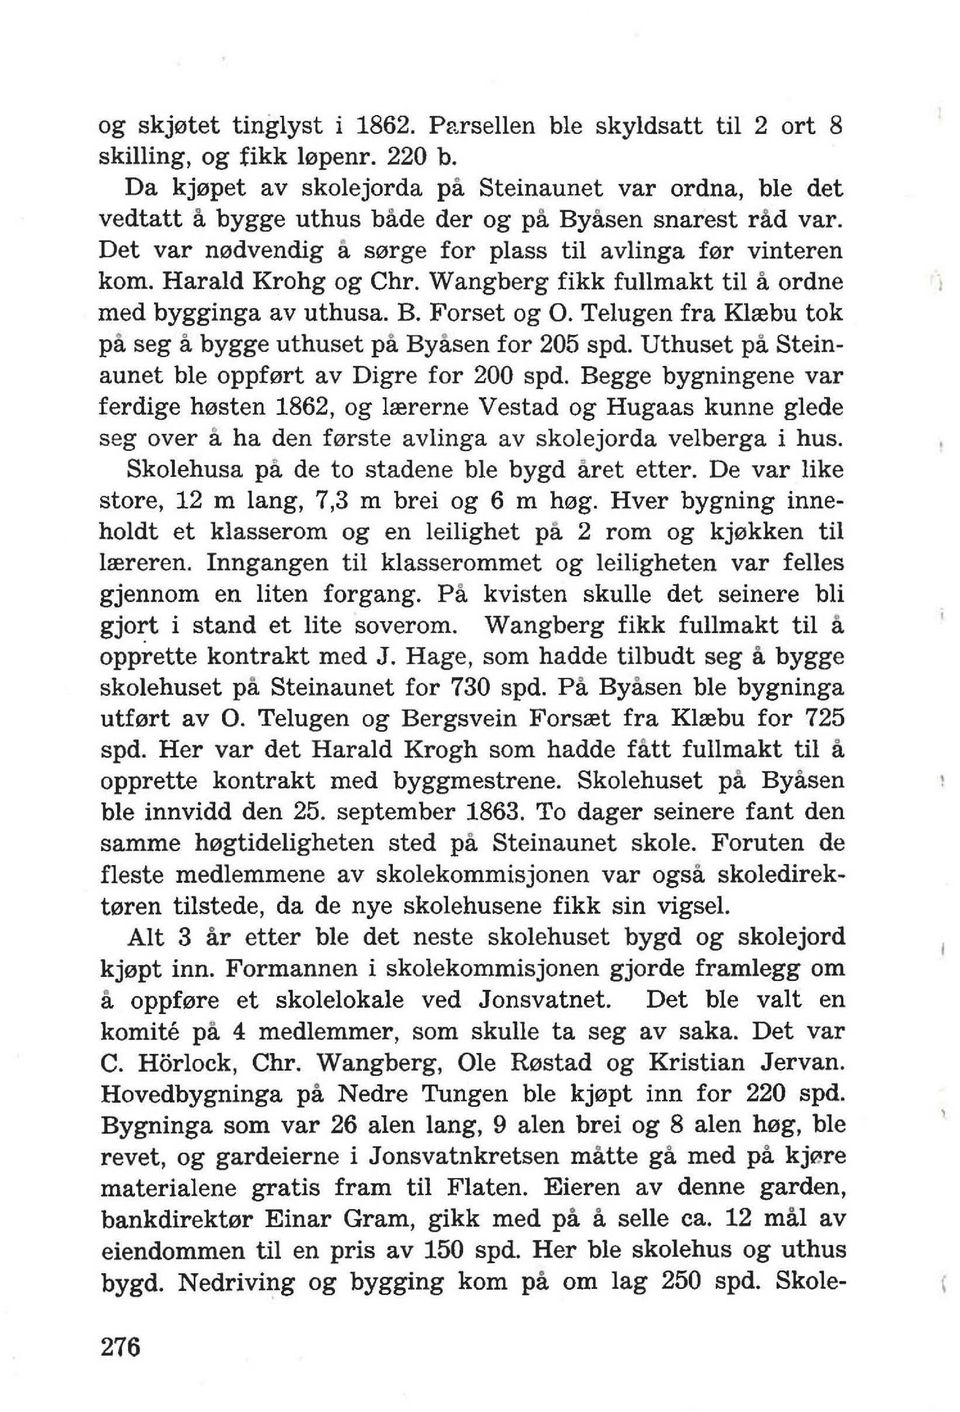 Harald Krohg og Chr. Wangberg fikk fullmakt til a ordne med bygginga av uthusa. B. Forset og O. Telugen fra Klrebu tok pa seg a bygge uthuset pa Byasen for 205 spd.